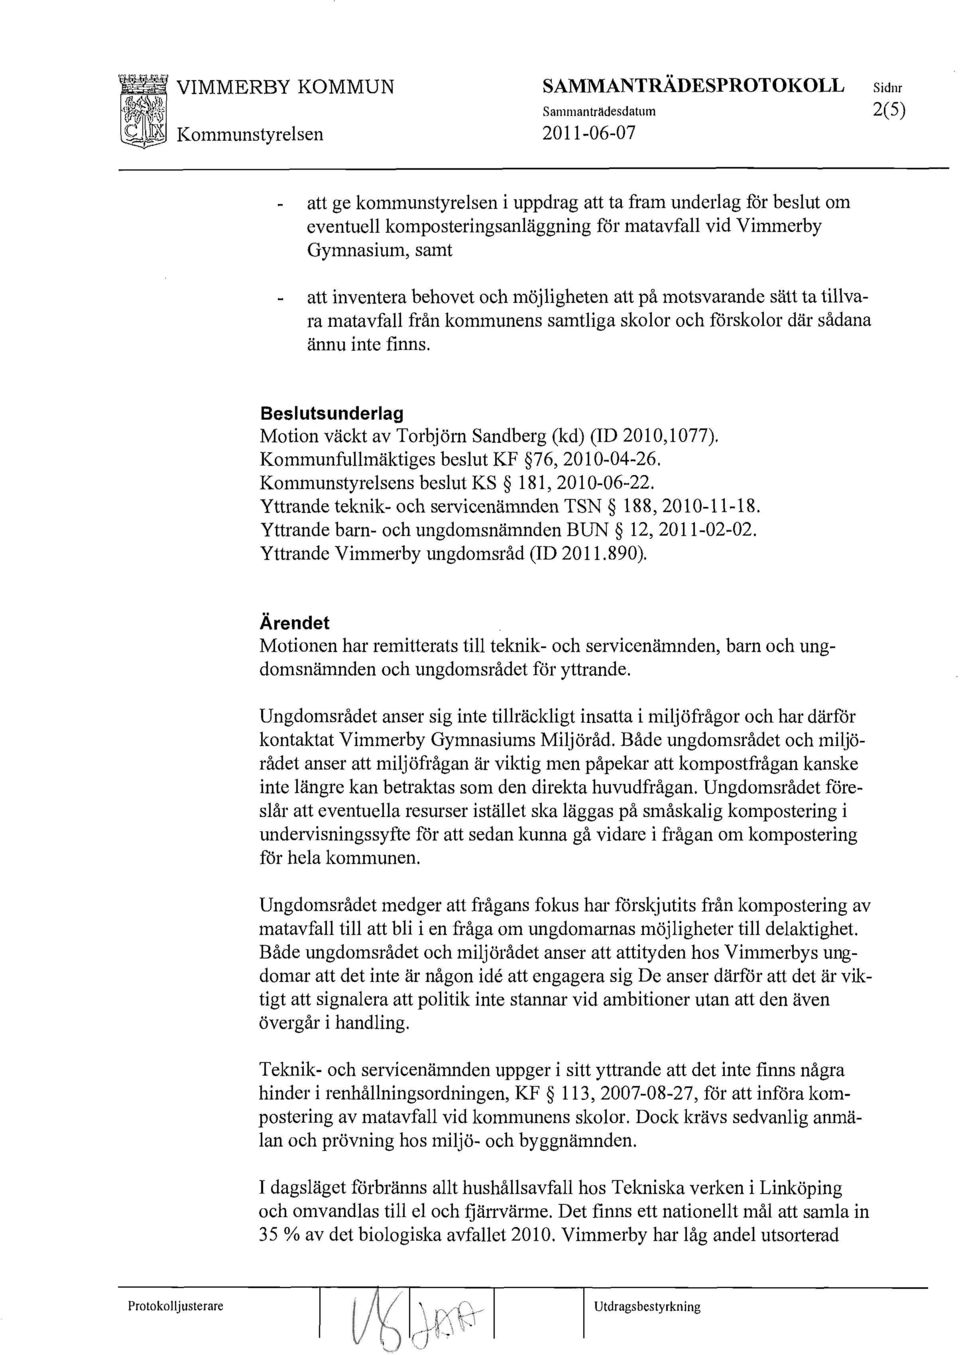 Beslutsunderlag Motion väckt av Torbjörn Sandberg (kd) (ID 2010,1077). Kommunfullmäktiges beslut KF 76, 2010-04-26. Kommunstyrelsens beslut KS 181,2010-06-22.